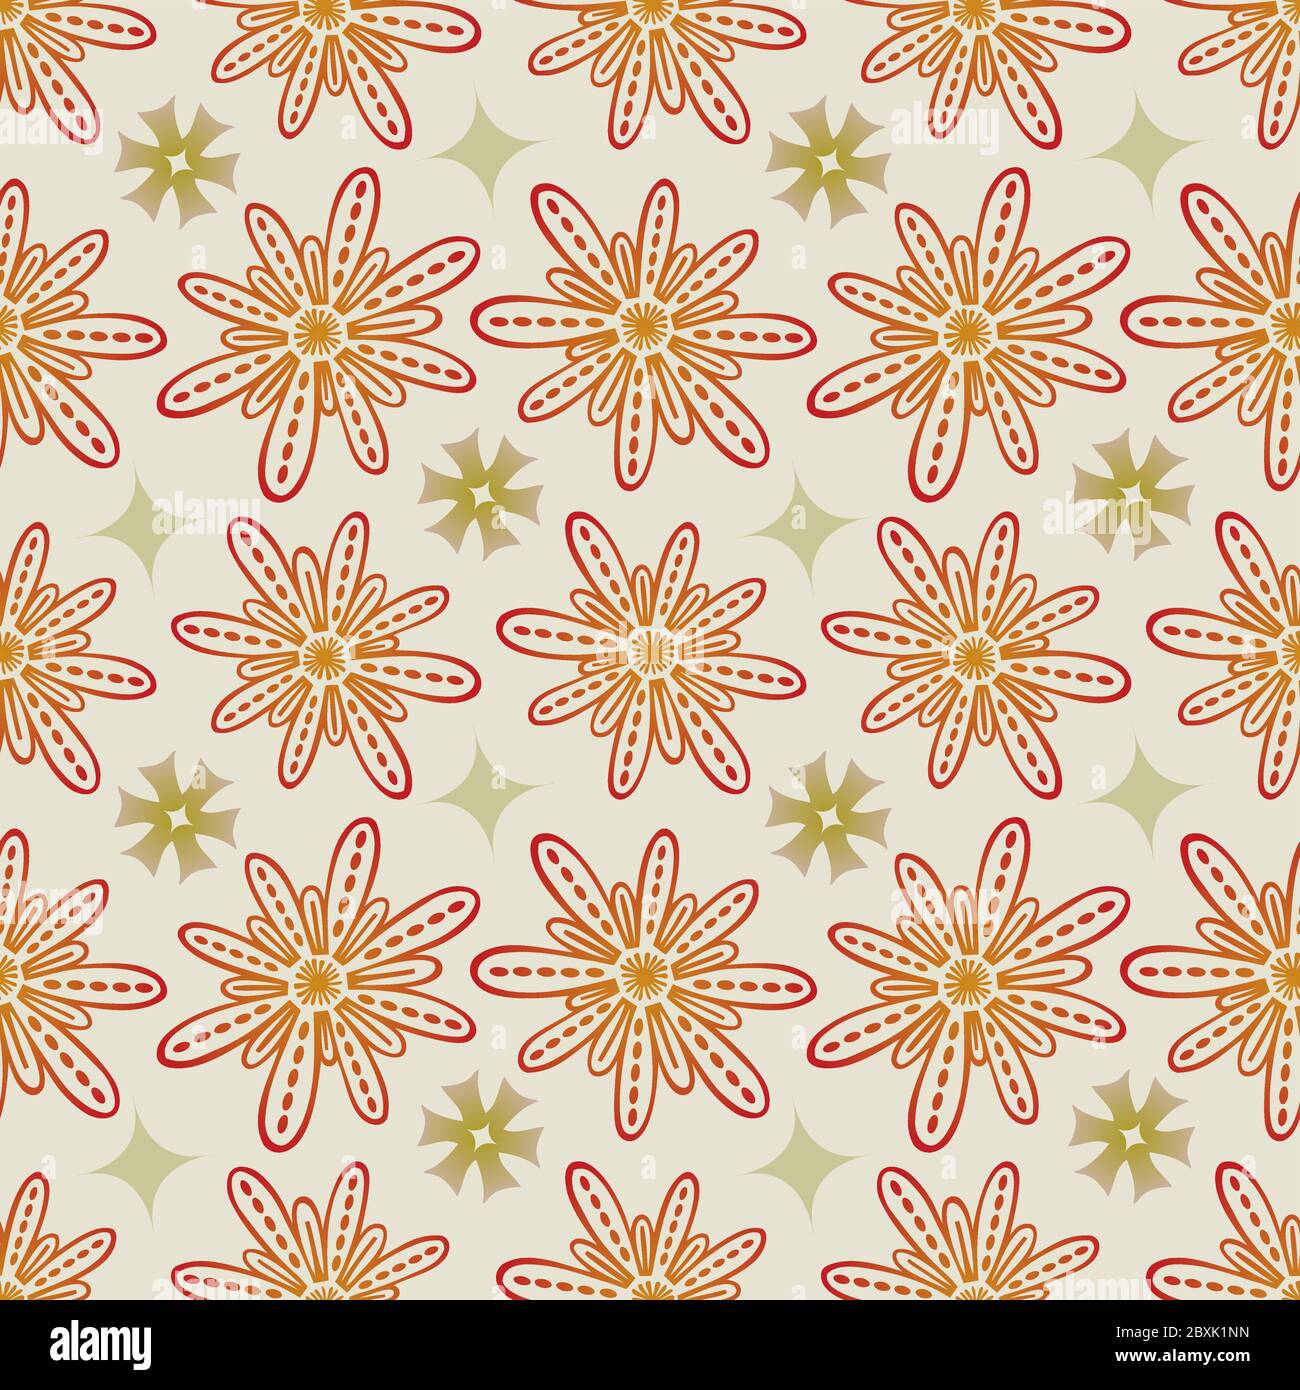 Blume Nahtloses Muster in Beige und Khaki - Pastell Farben auf grauem Hintergrund Stock Vektor